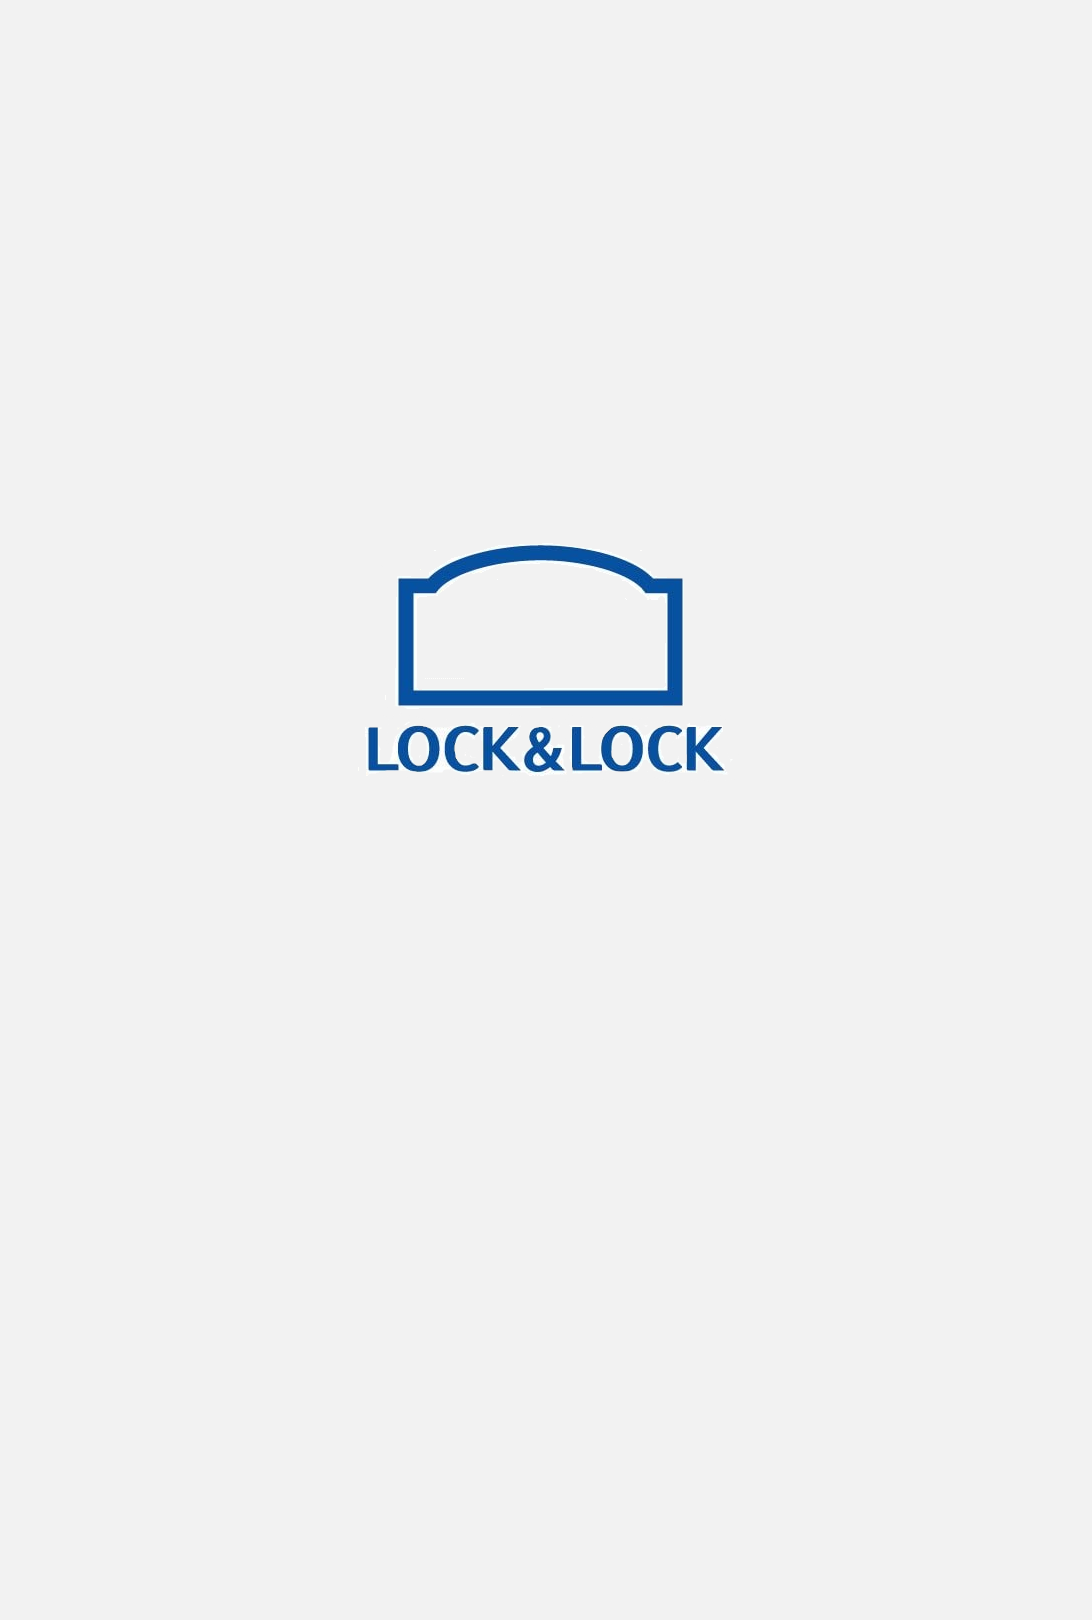 lock & lock - mob